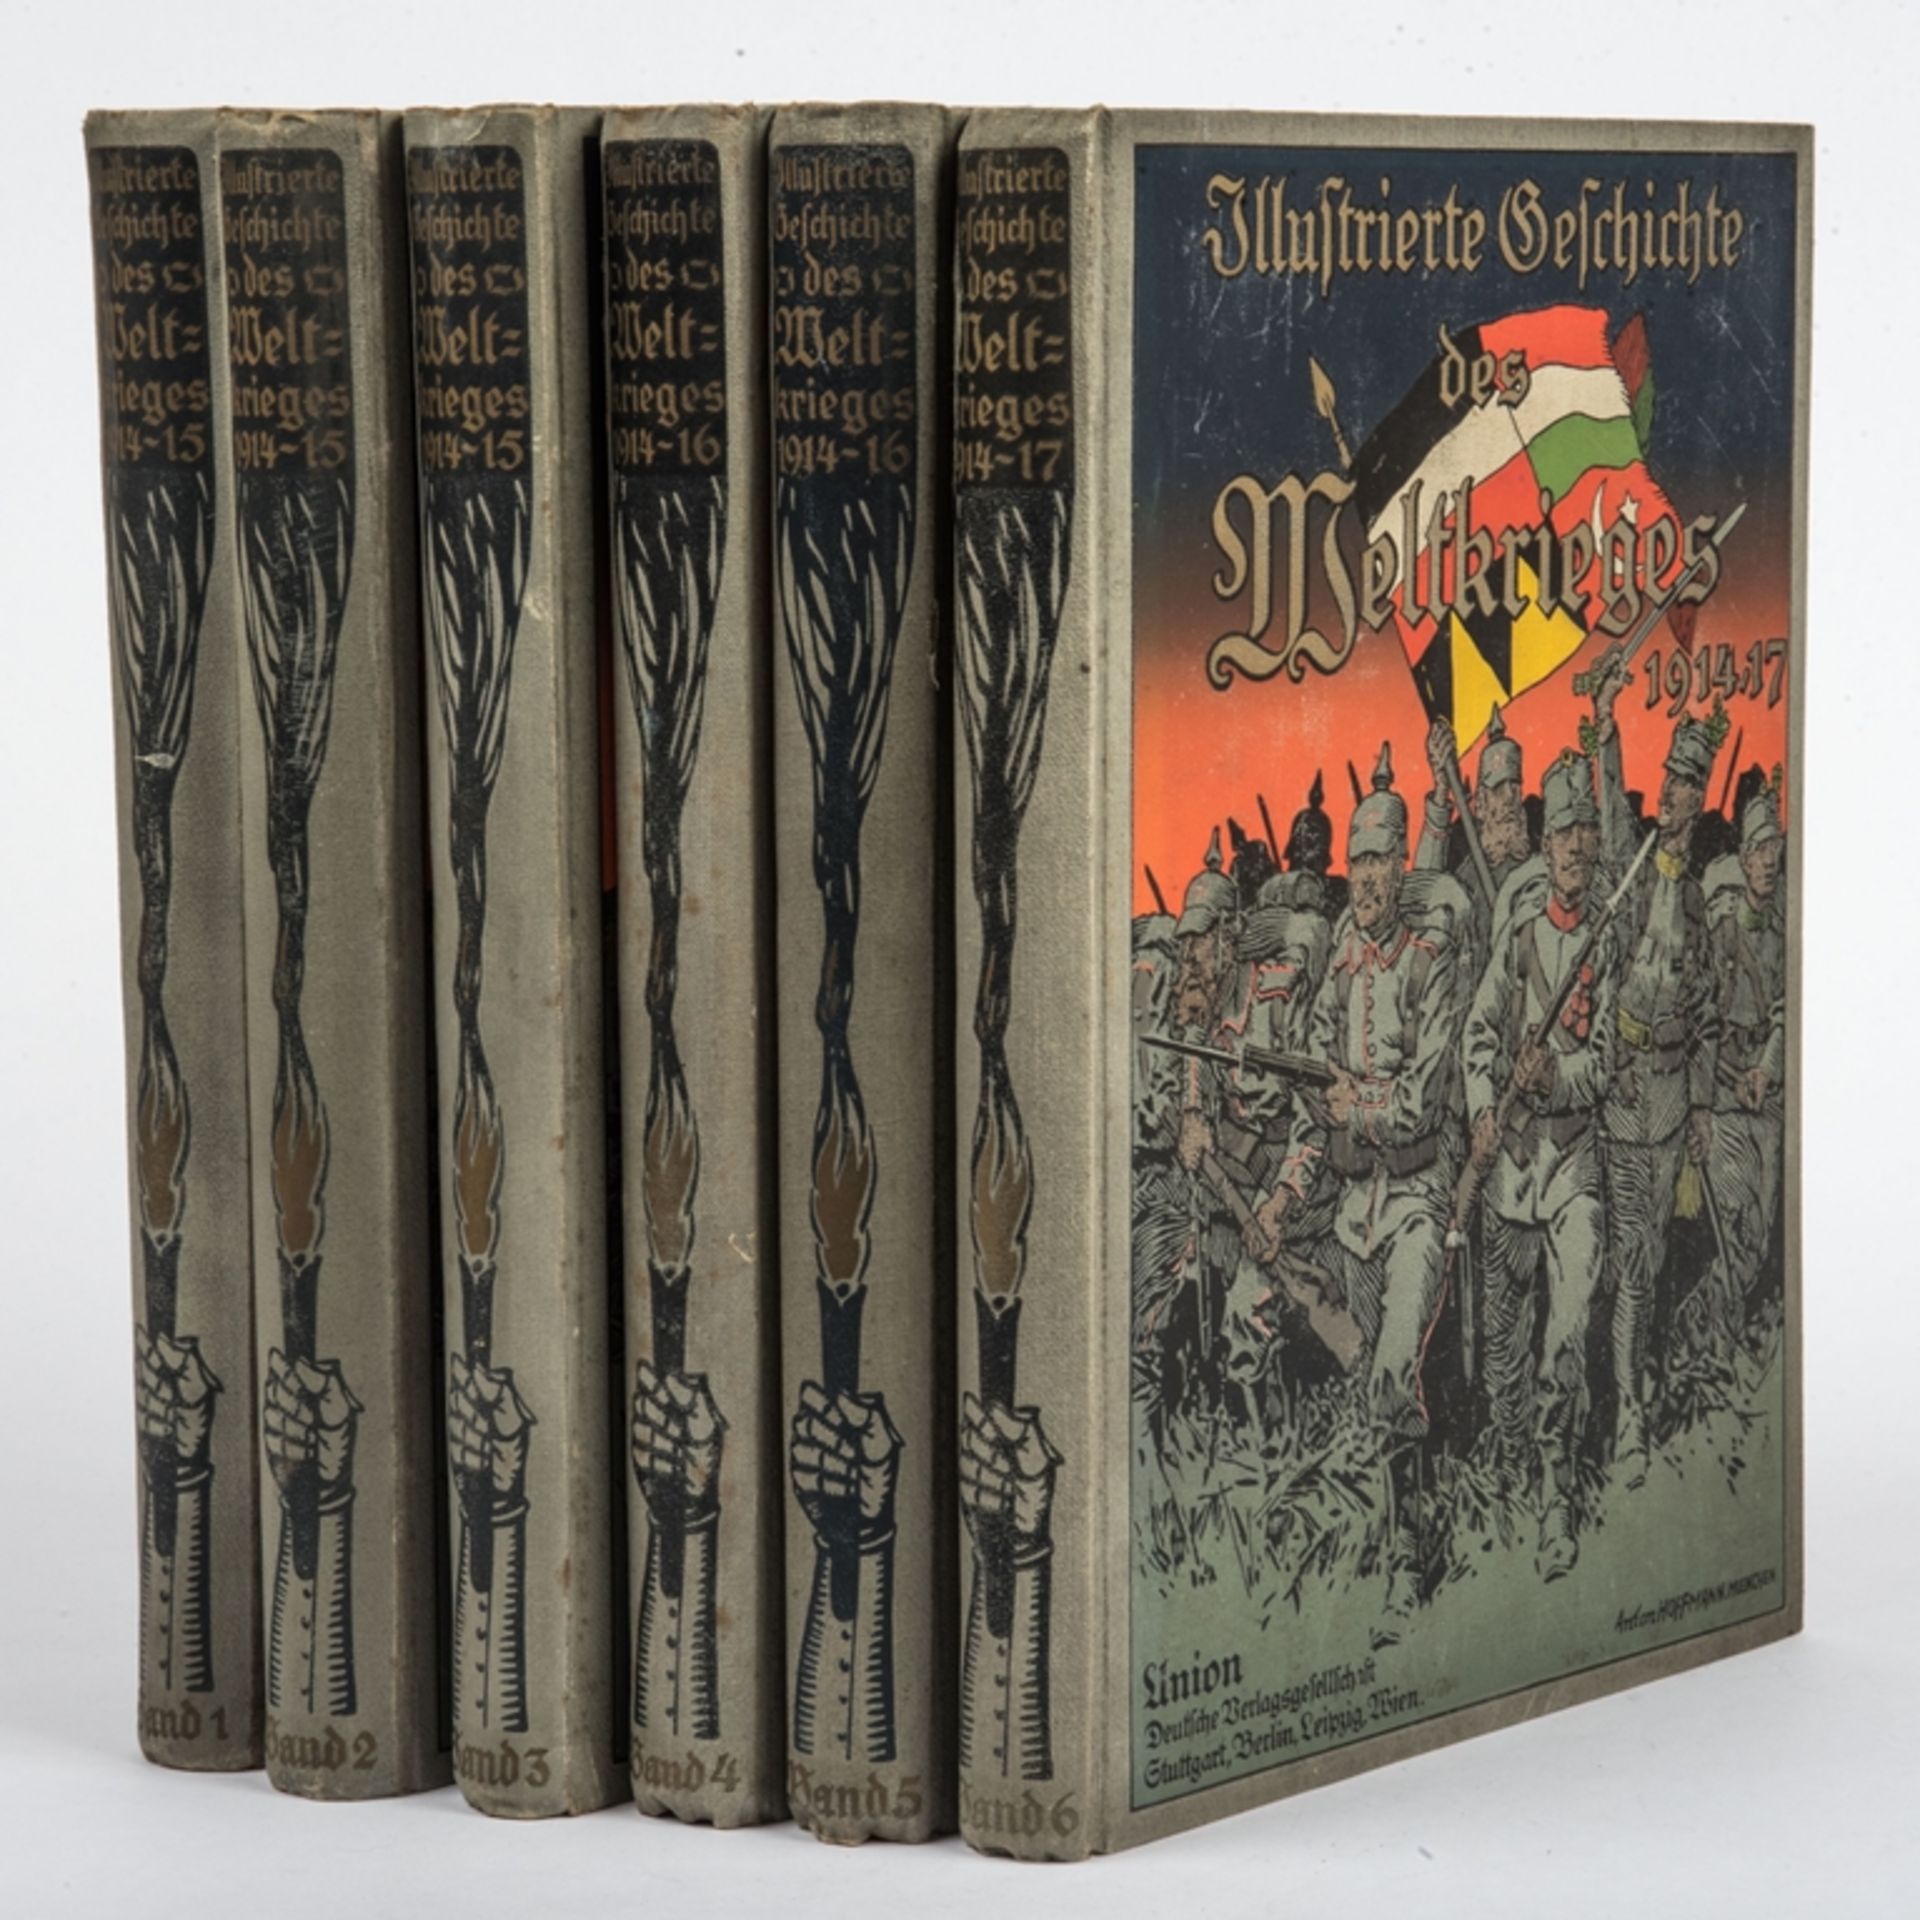 Illustrierte Geschichte des Weltkriegs 1914-17, 6 Bände